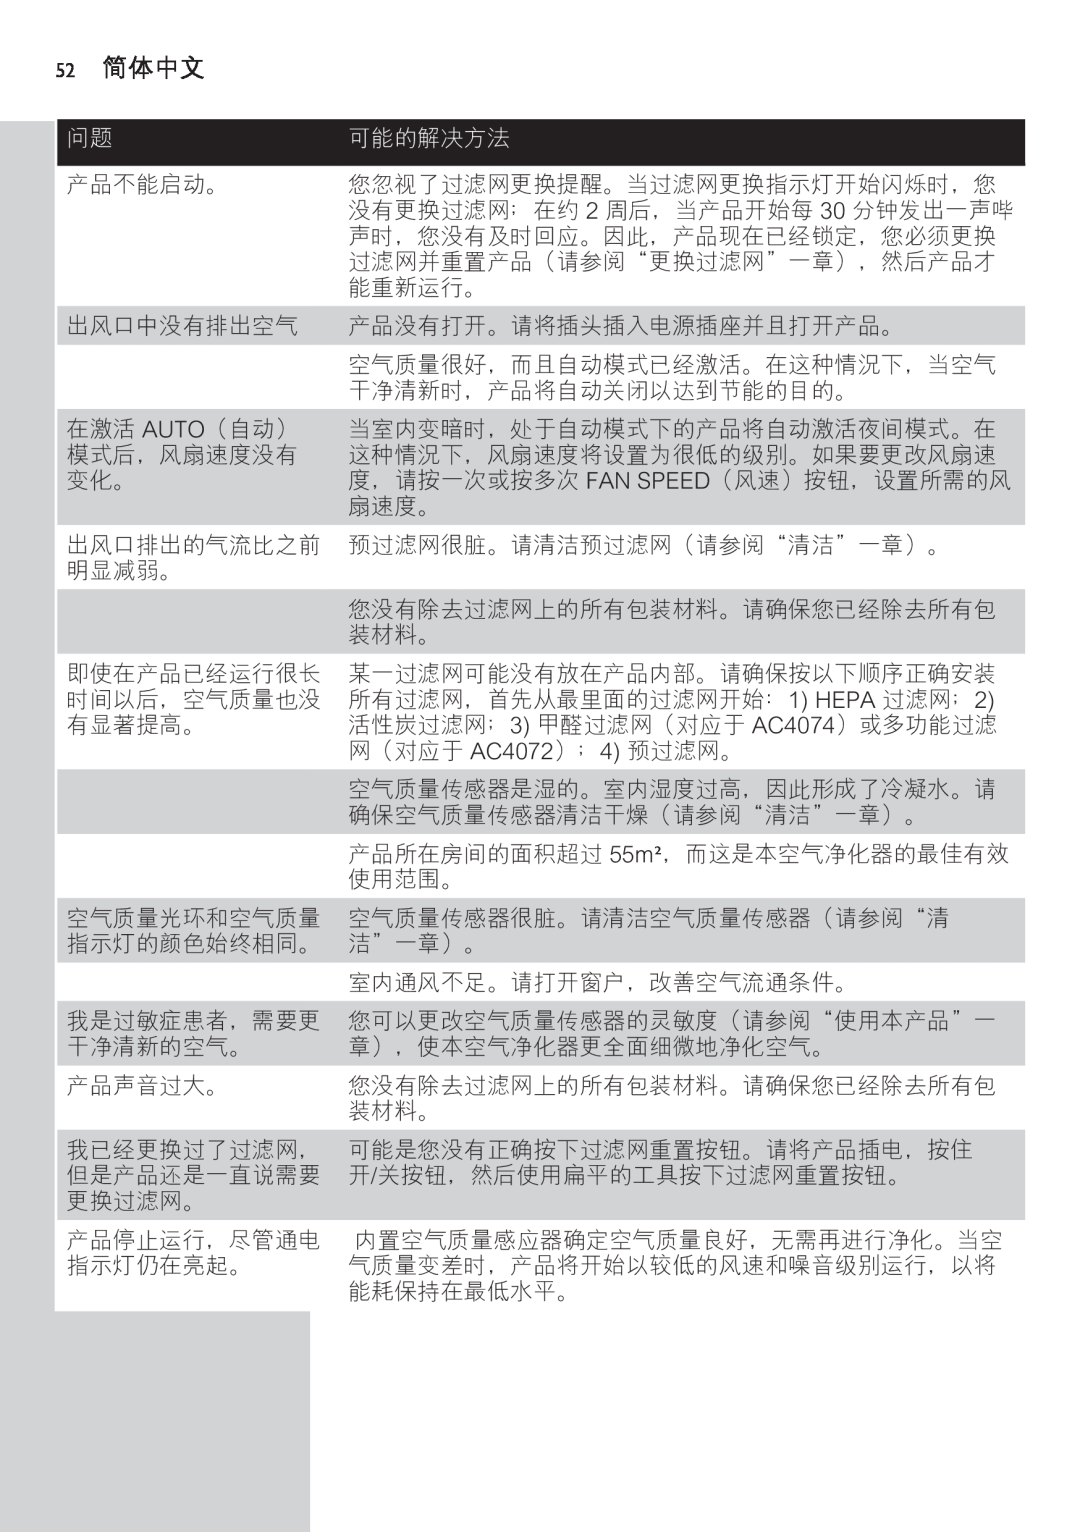 Philips AC4074 manual 52 简体中文, 可能的解决方法 